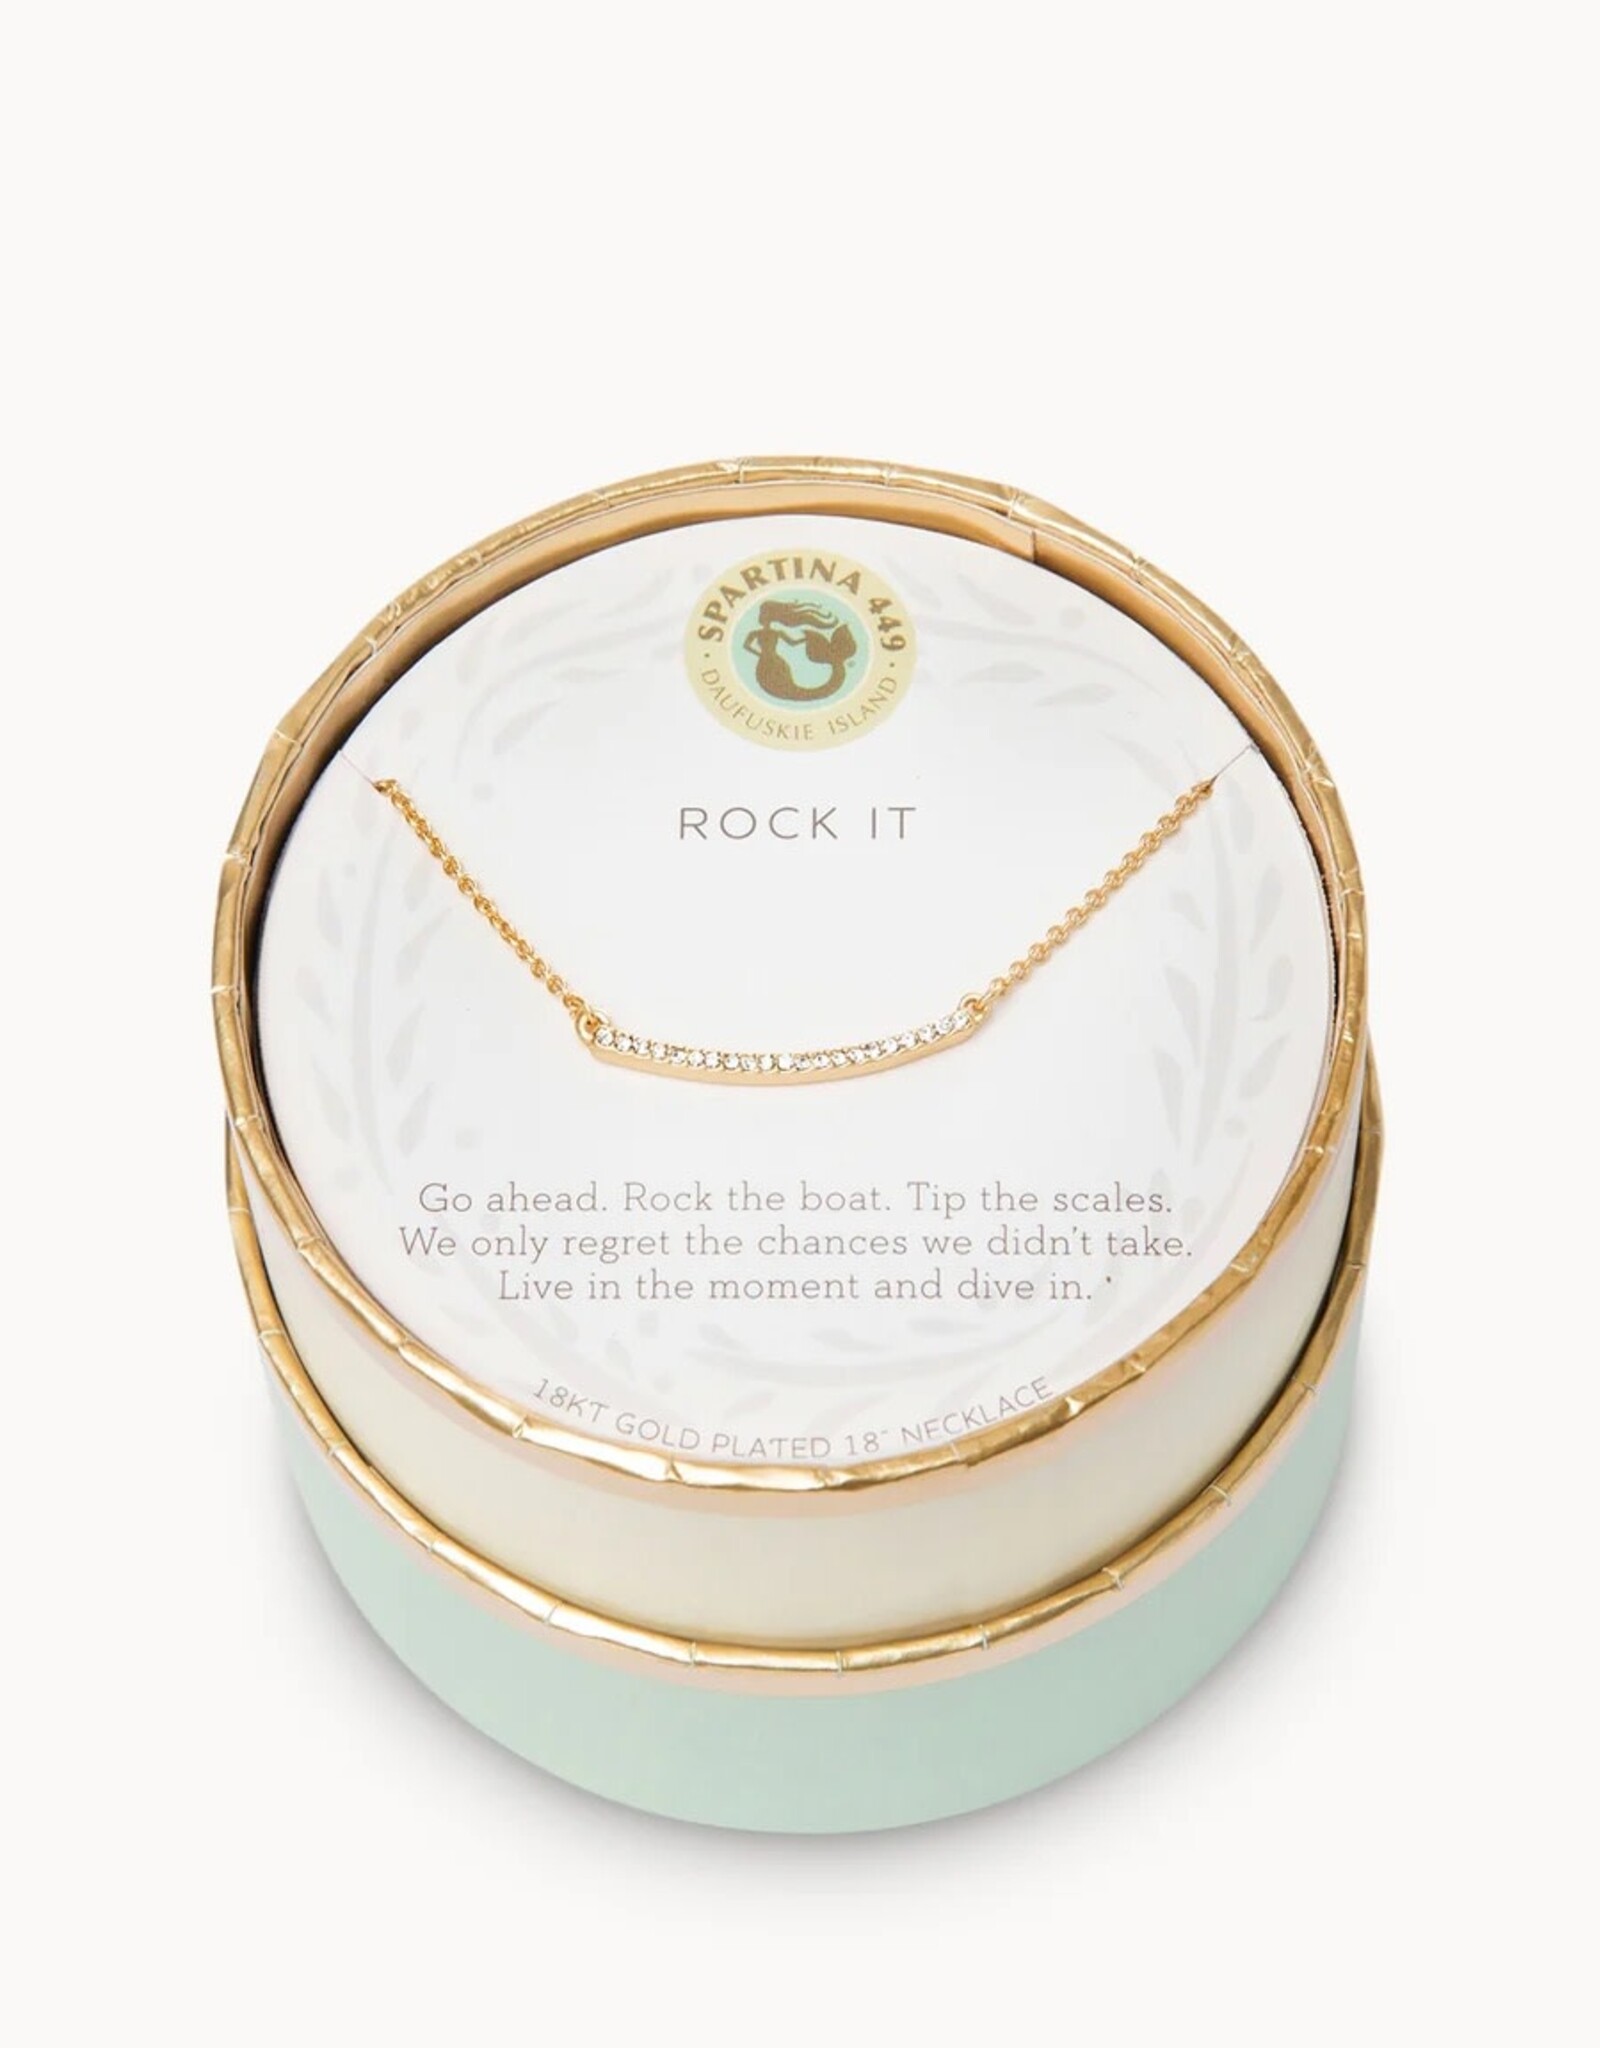 Spartina Spartina Sea La Vie Rock It 18" Necklace Gold